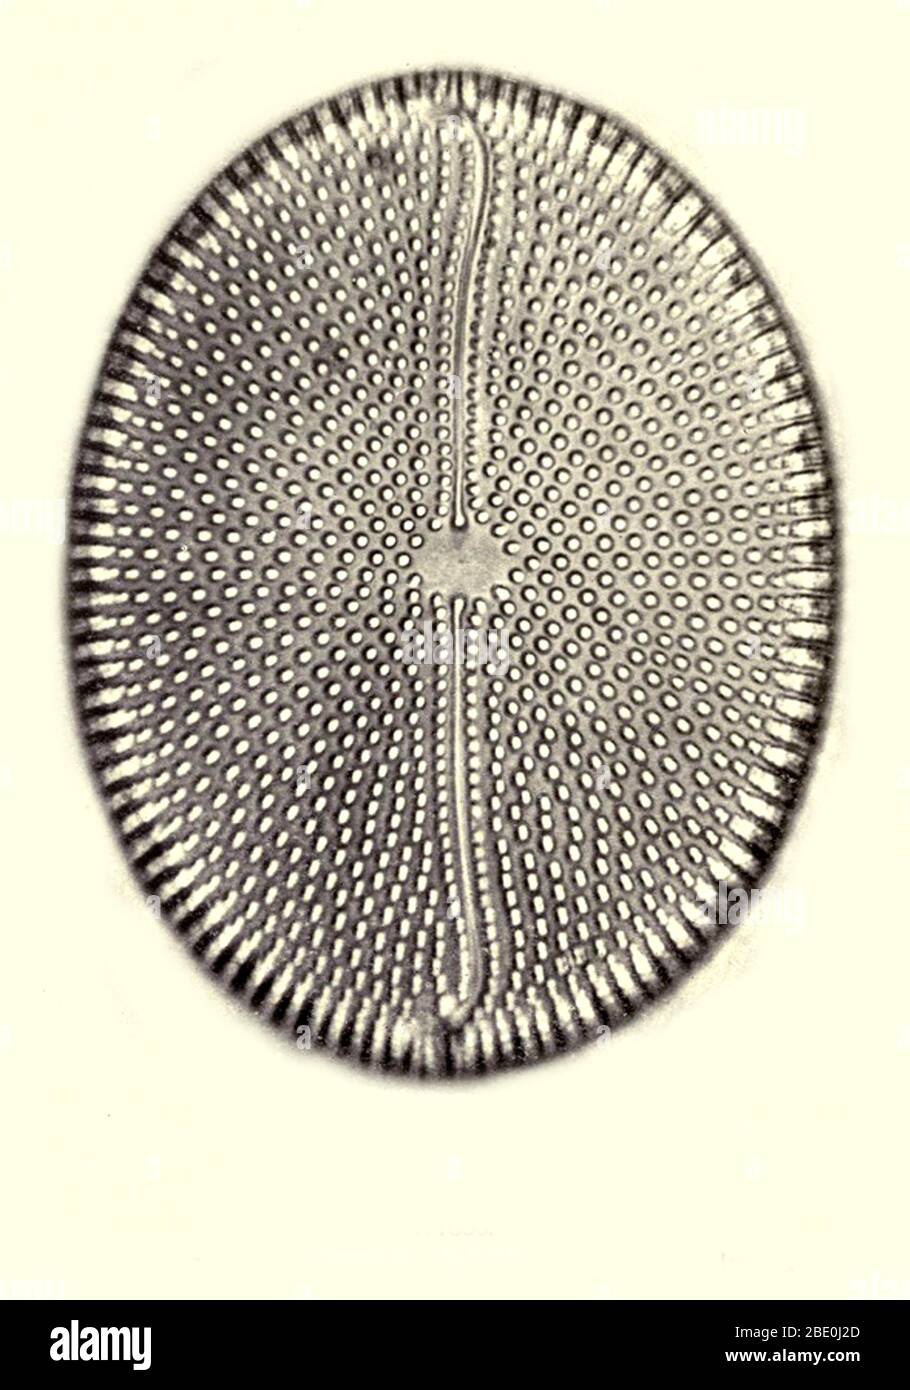 Kieselalge, aus Bori, Ungarn. Vergrößerung: 1000x. Fotomikrograph von Arthur E Smith in den frühen 1900er Jahren, mit einem kombinierten Mikroskop und Kamera. 1904 stellte die Royal Society in London eine Reihe von Smiths Fotomikrographen der Öffentlichkeit aus. Sie wurden später 1909 in einem Buch mit dem Titel "Nature Through Microscope & Camera" veröffentlicht. Sie waren die ersten Beispiele für die Photomikroskopie, die viele je gesehen hatten. Stockfoto